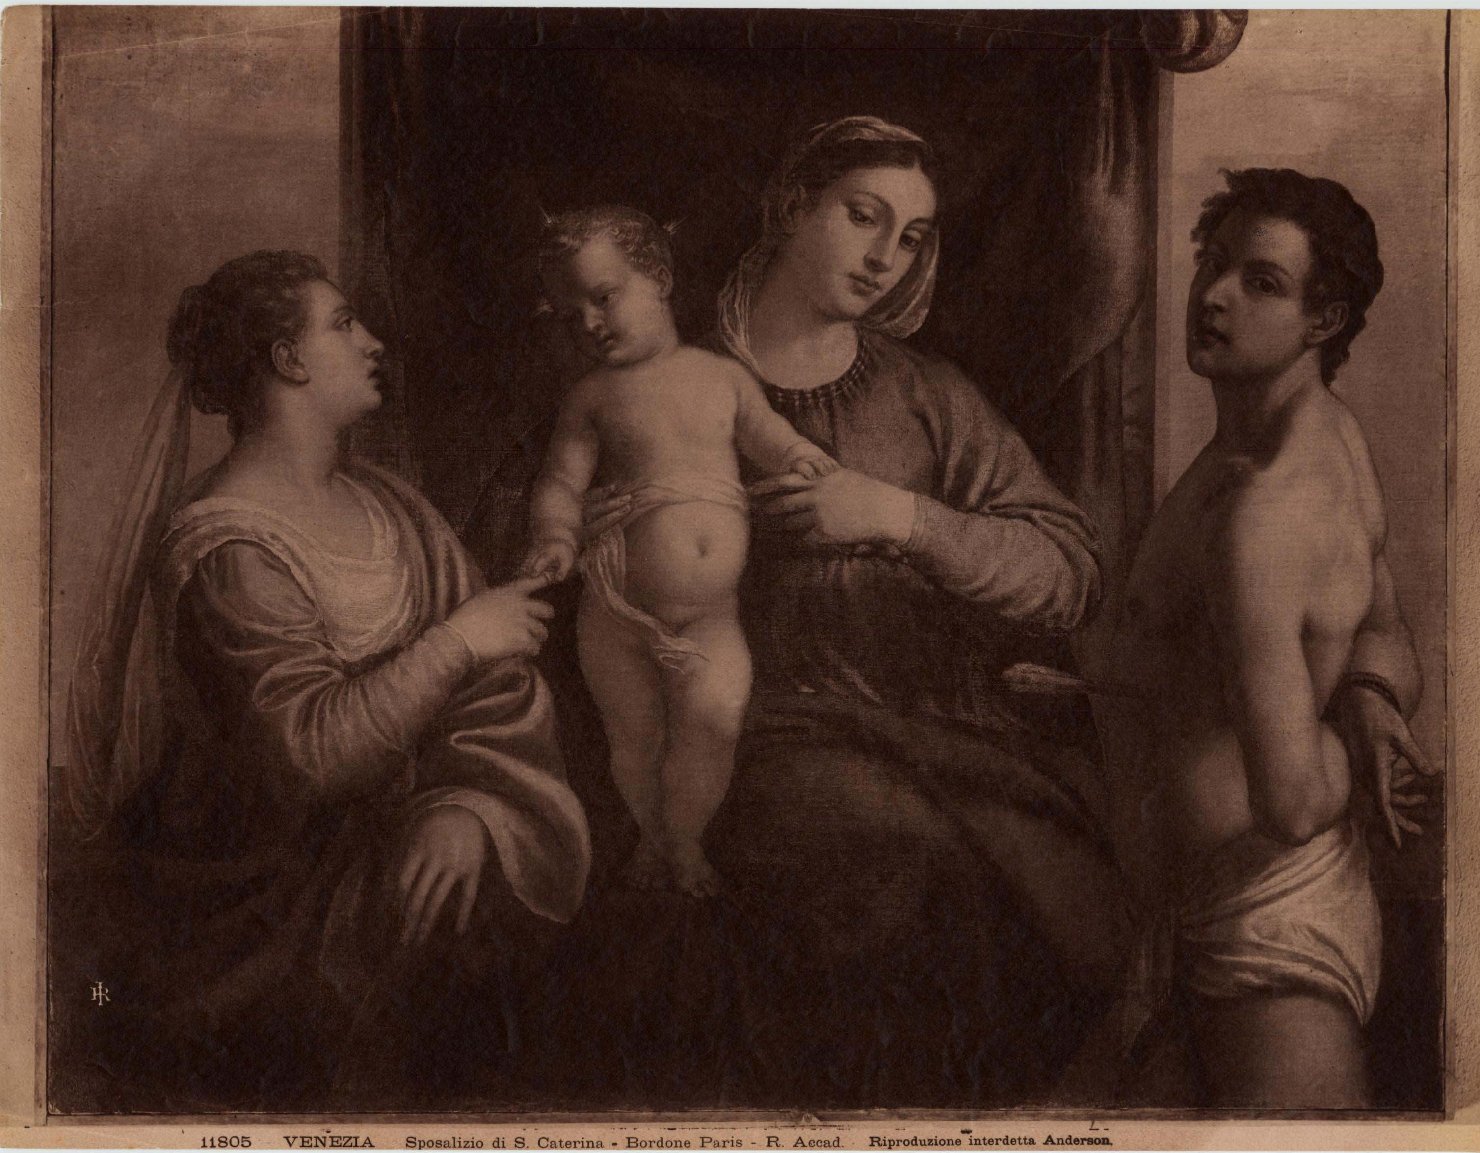 Sposalizio di Santa Caterina - Dipinti (positivo) di Bordon, Paris, Anderson, Domenico (ditta) (XIX/ XX)